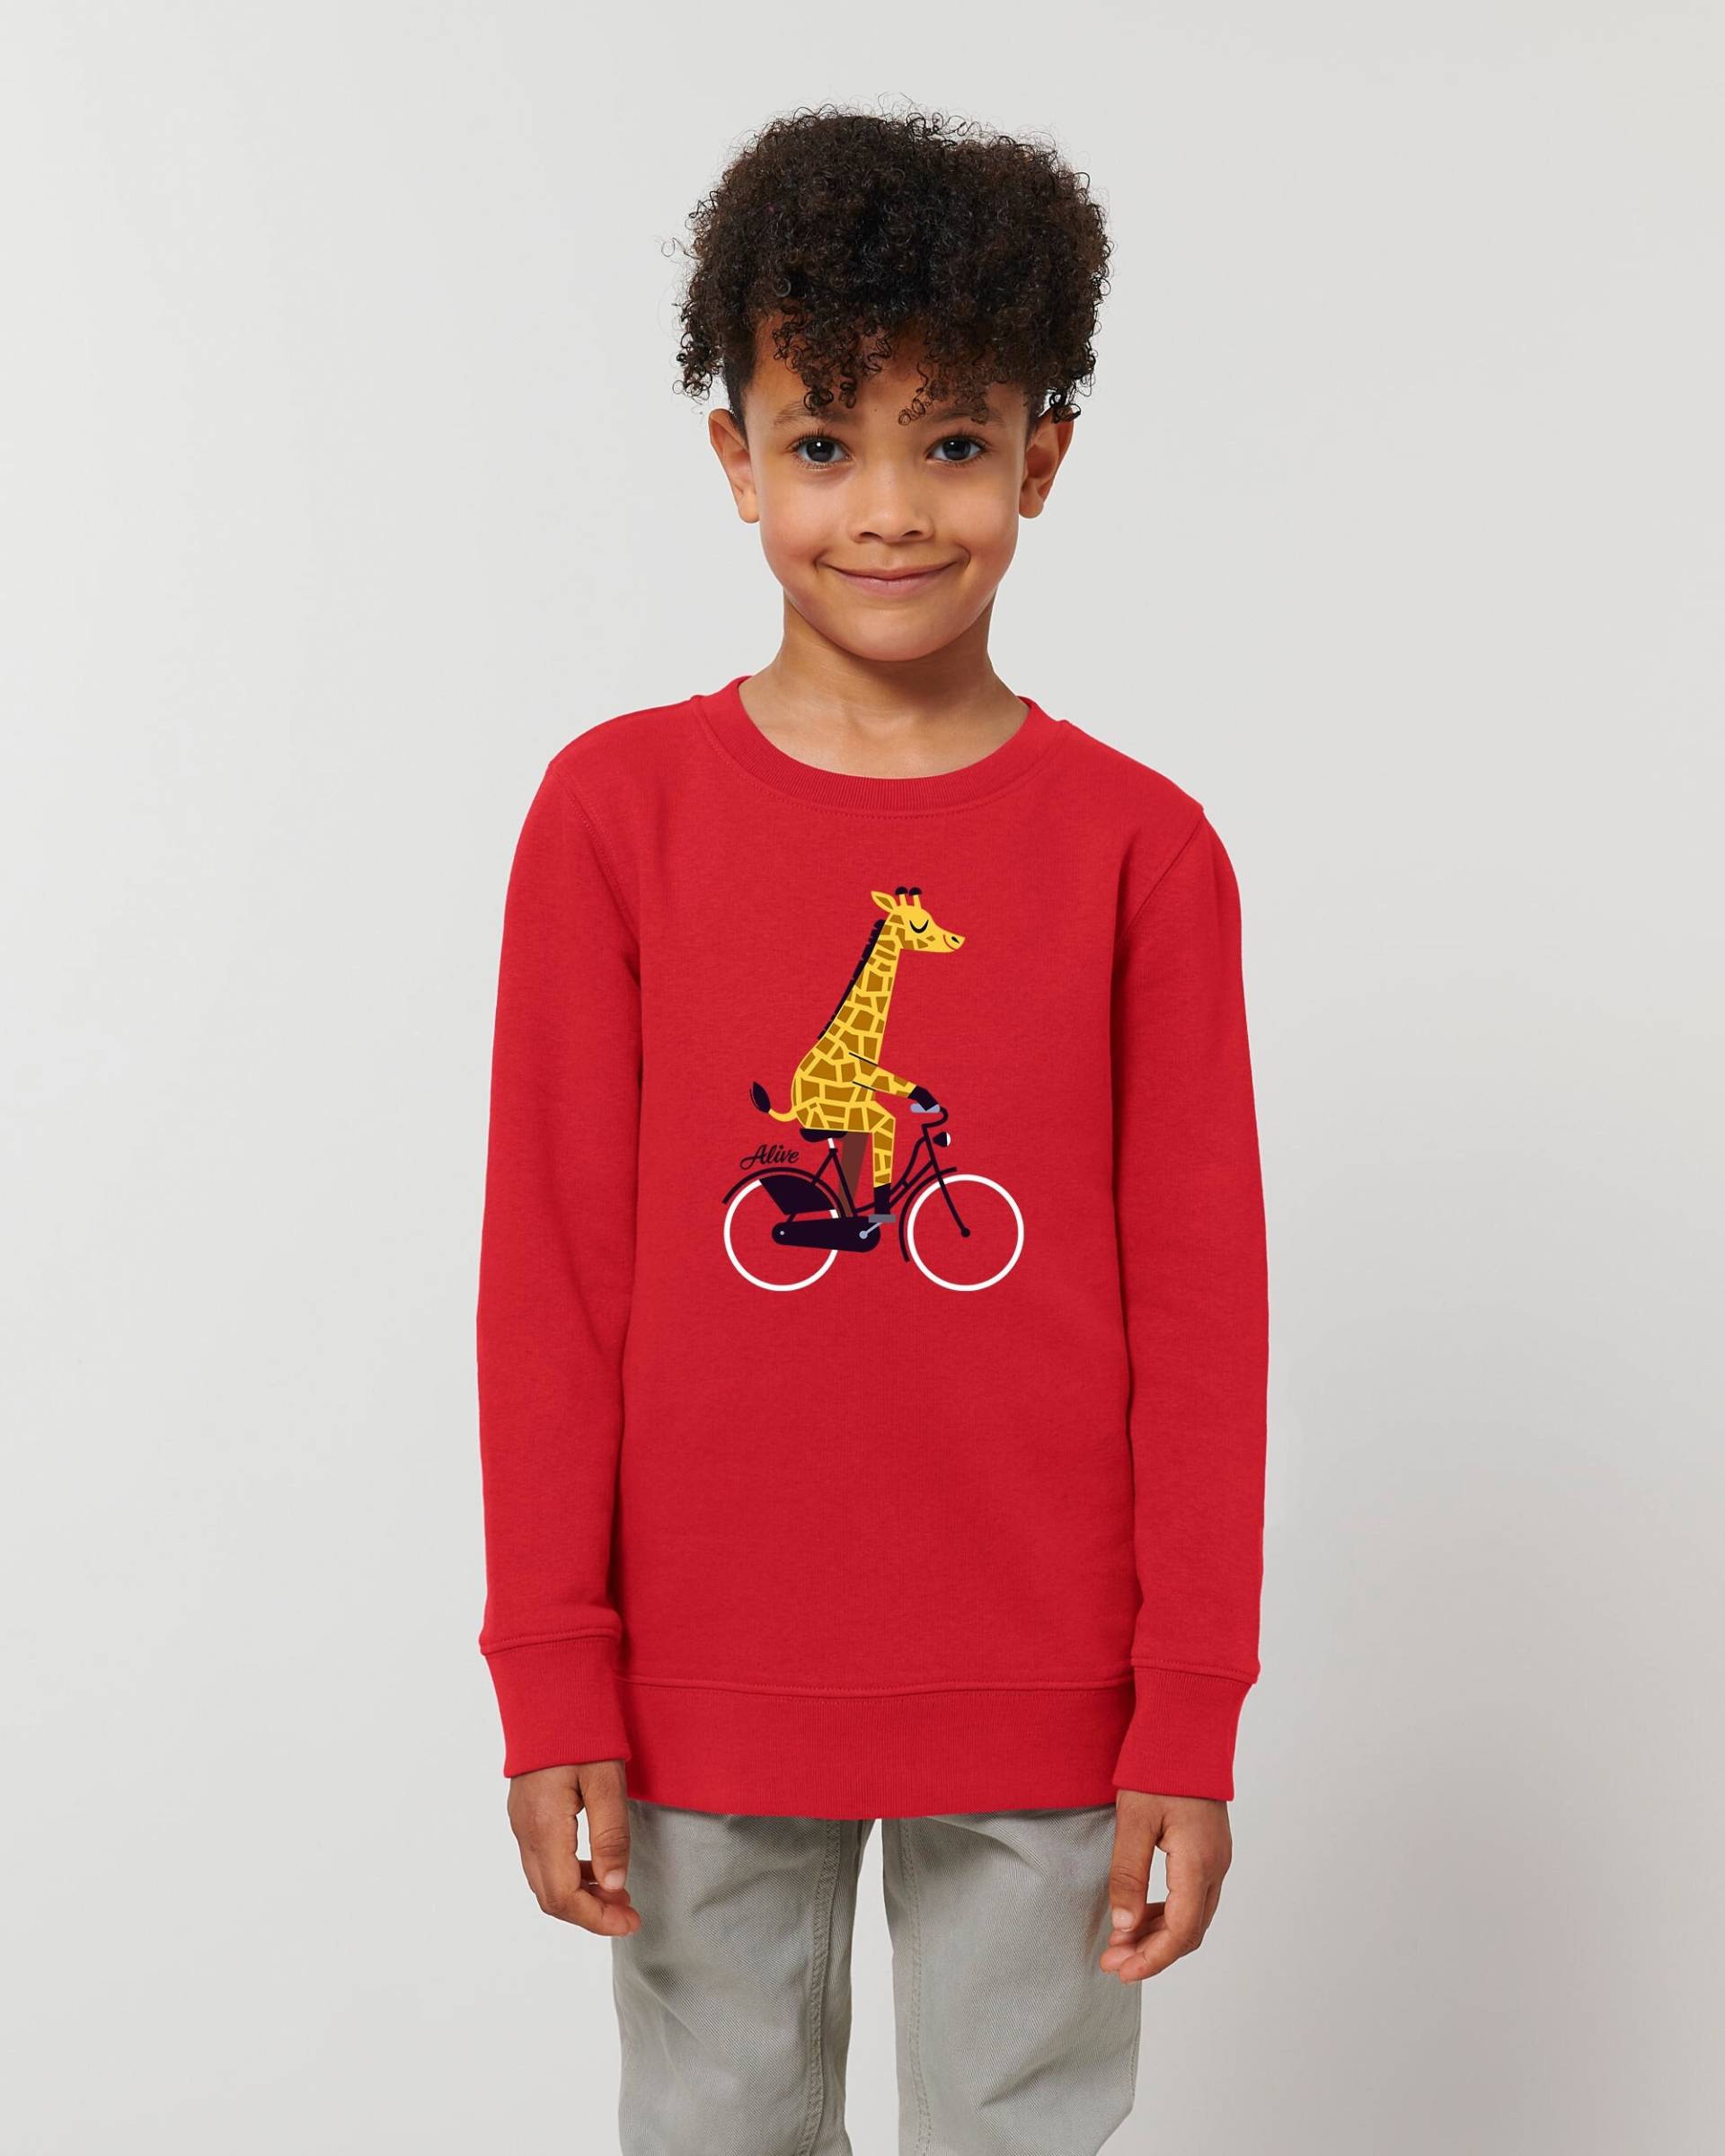 Biking Giraffe Longsleeve Sweatshirt Kids Mädchen Und Jungs Giraffe von AliveClothingShirts